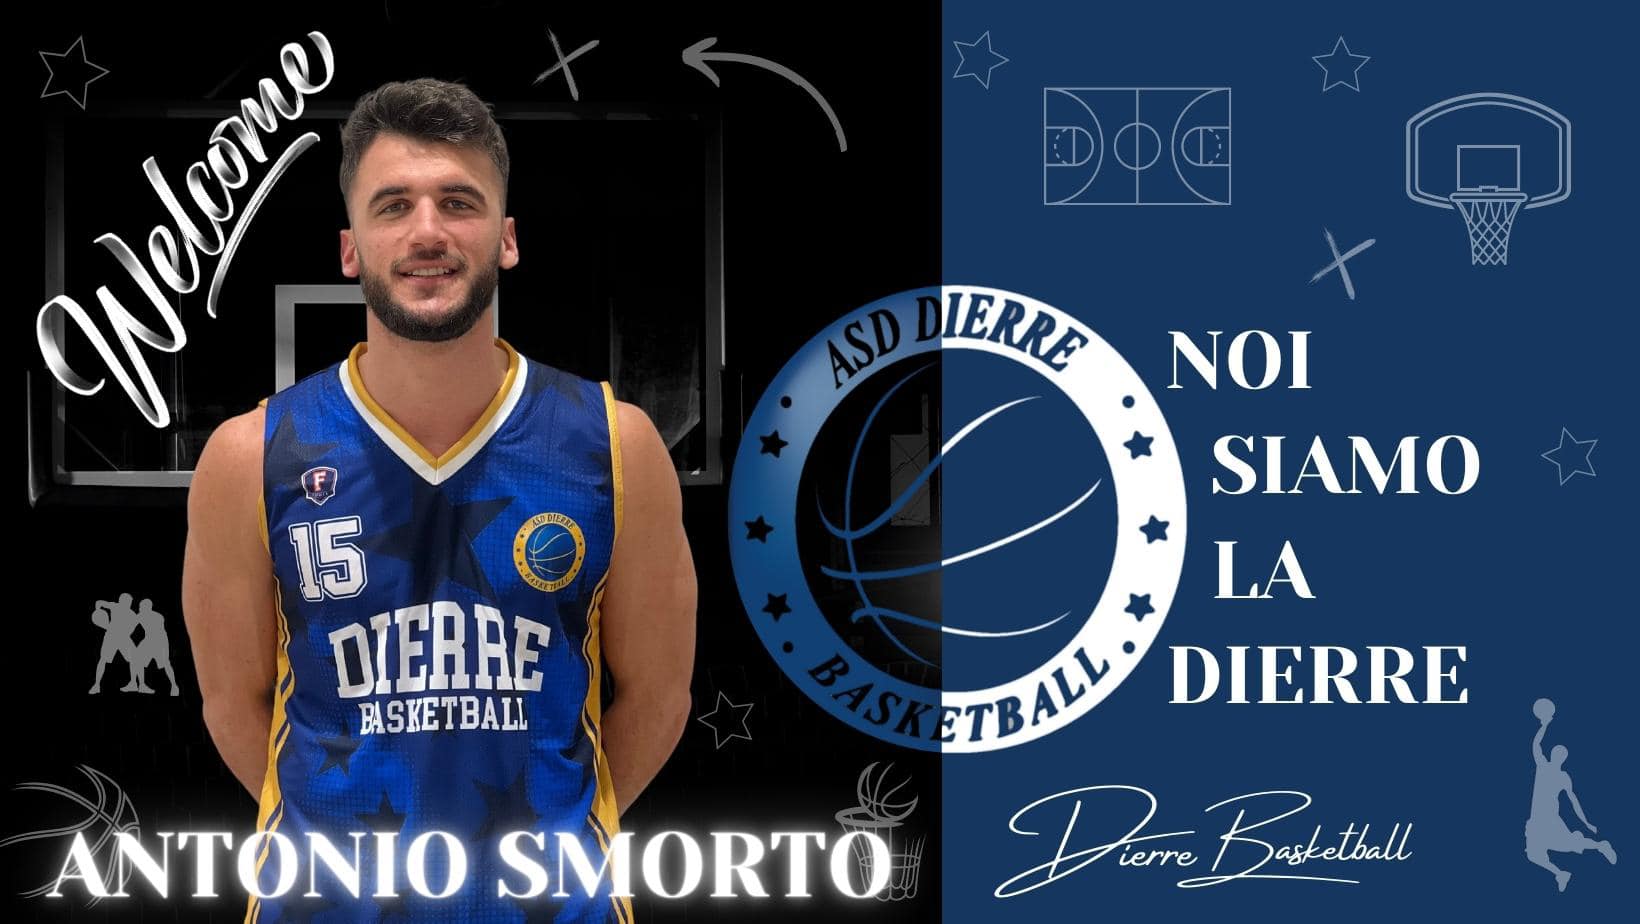 Dierre Basketball Reggio Calabria, colpo di mercato con Antonio Smorto